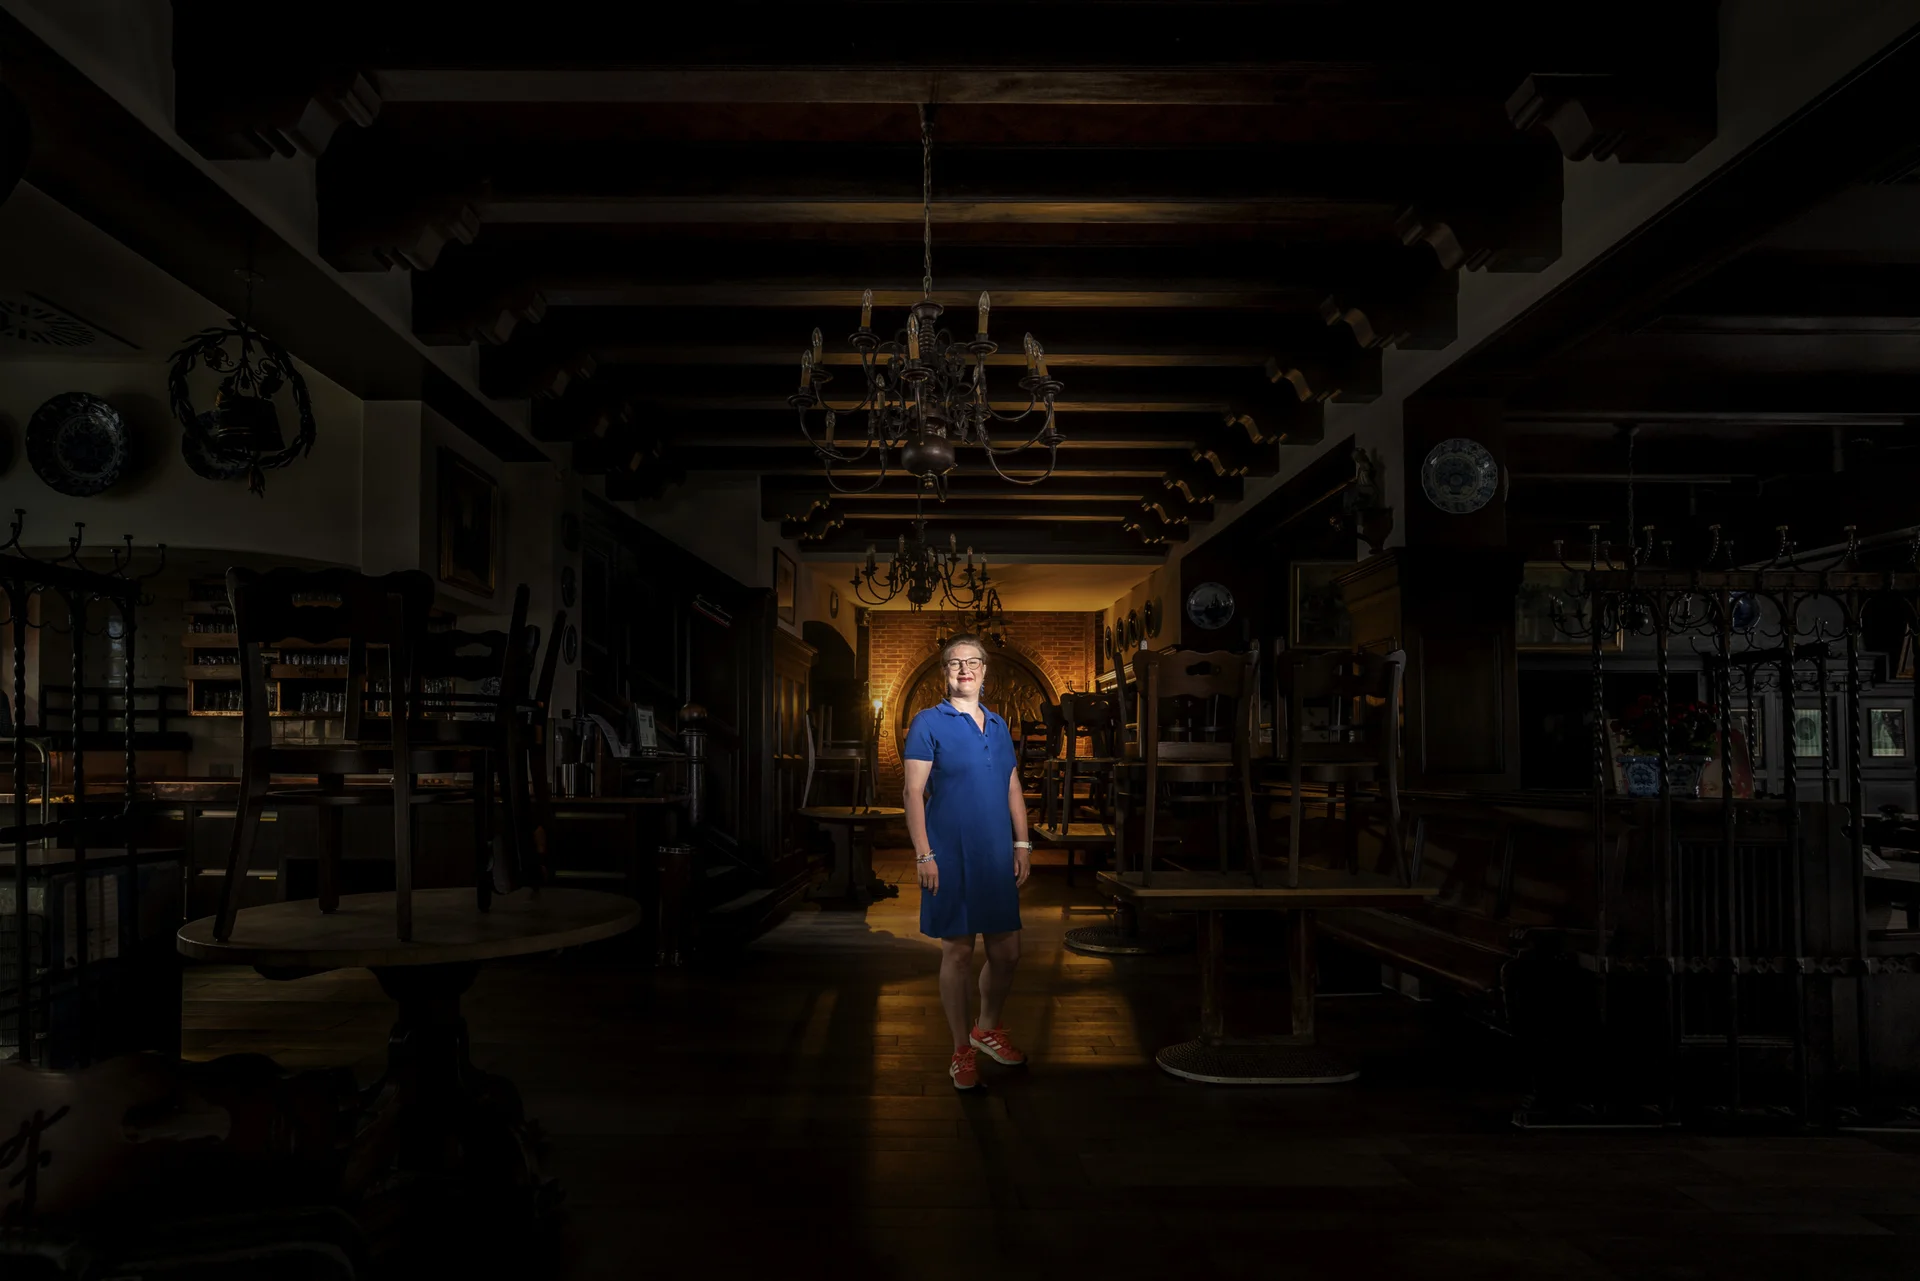 Frau in blauem Kleid in einer leeren Gaststätte, dunkel Lichtspot in der Mitte auf der Frau